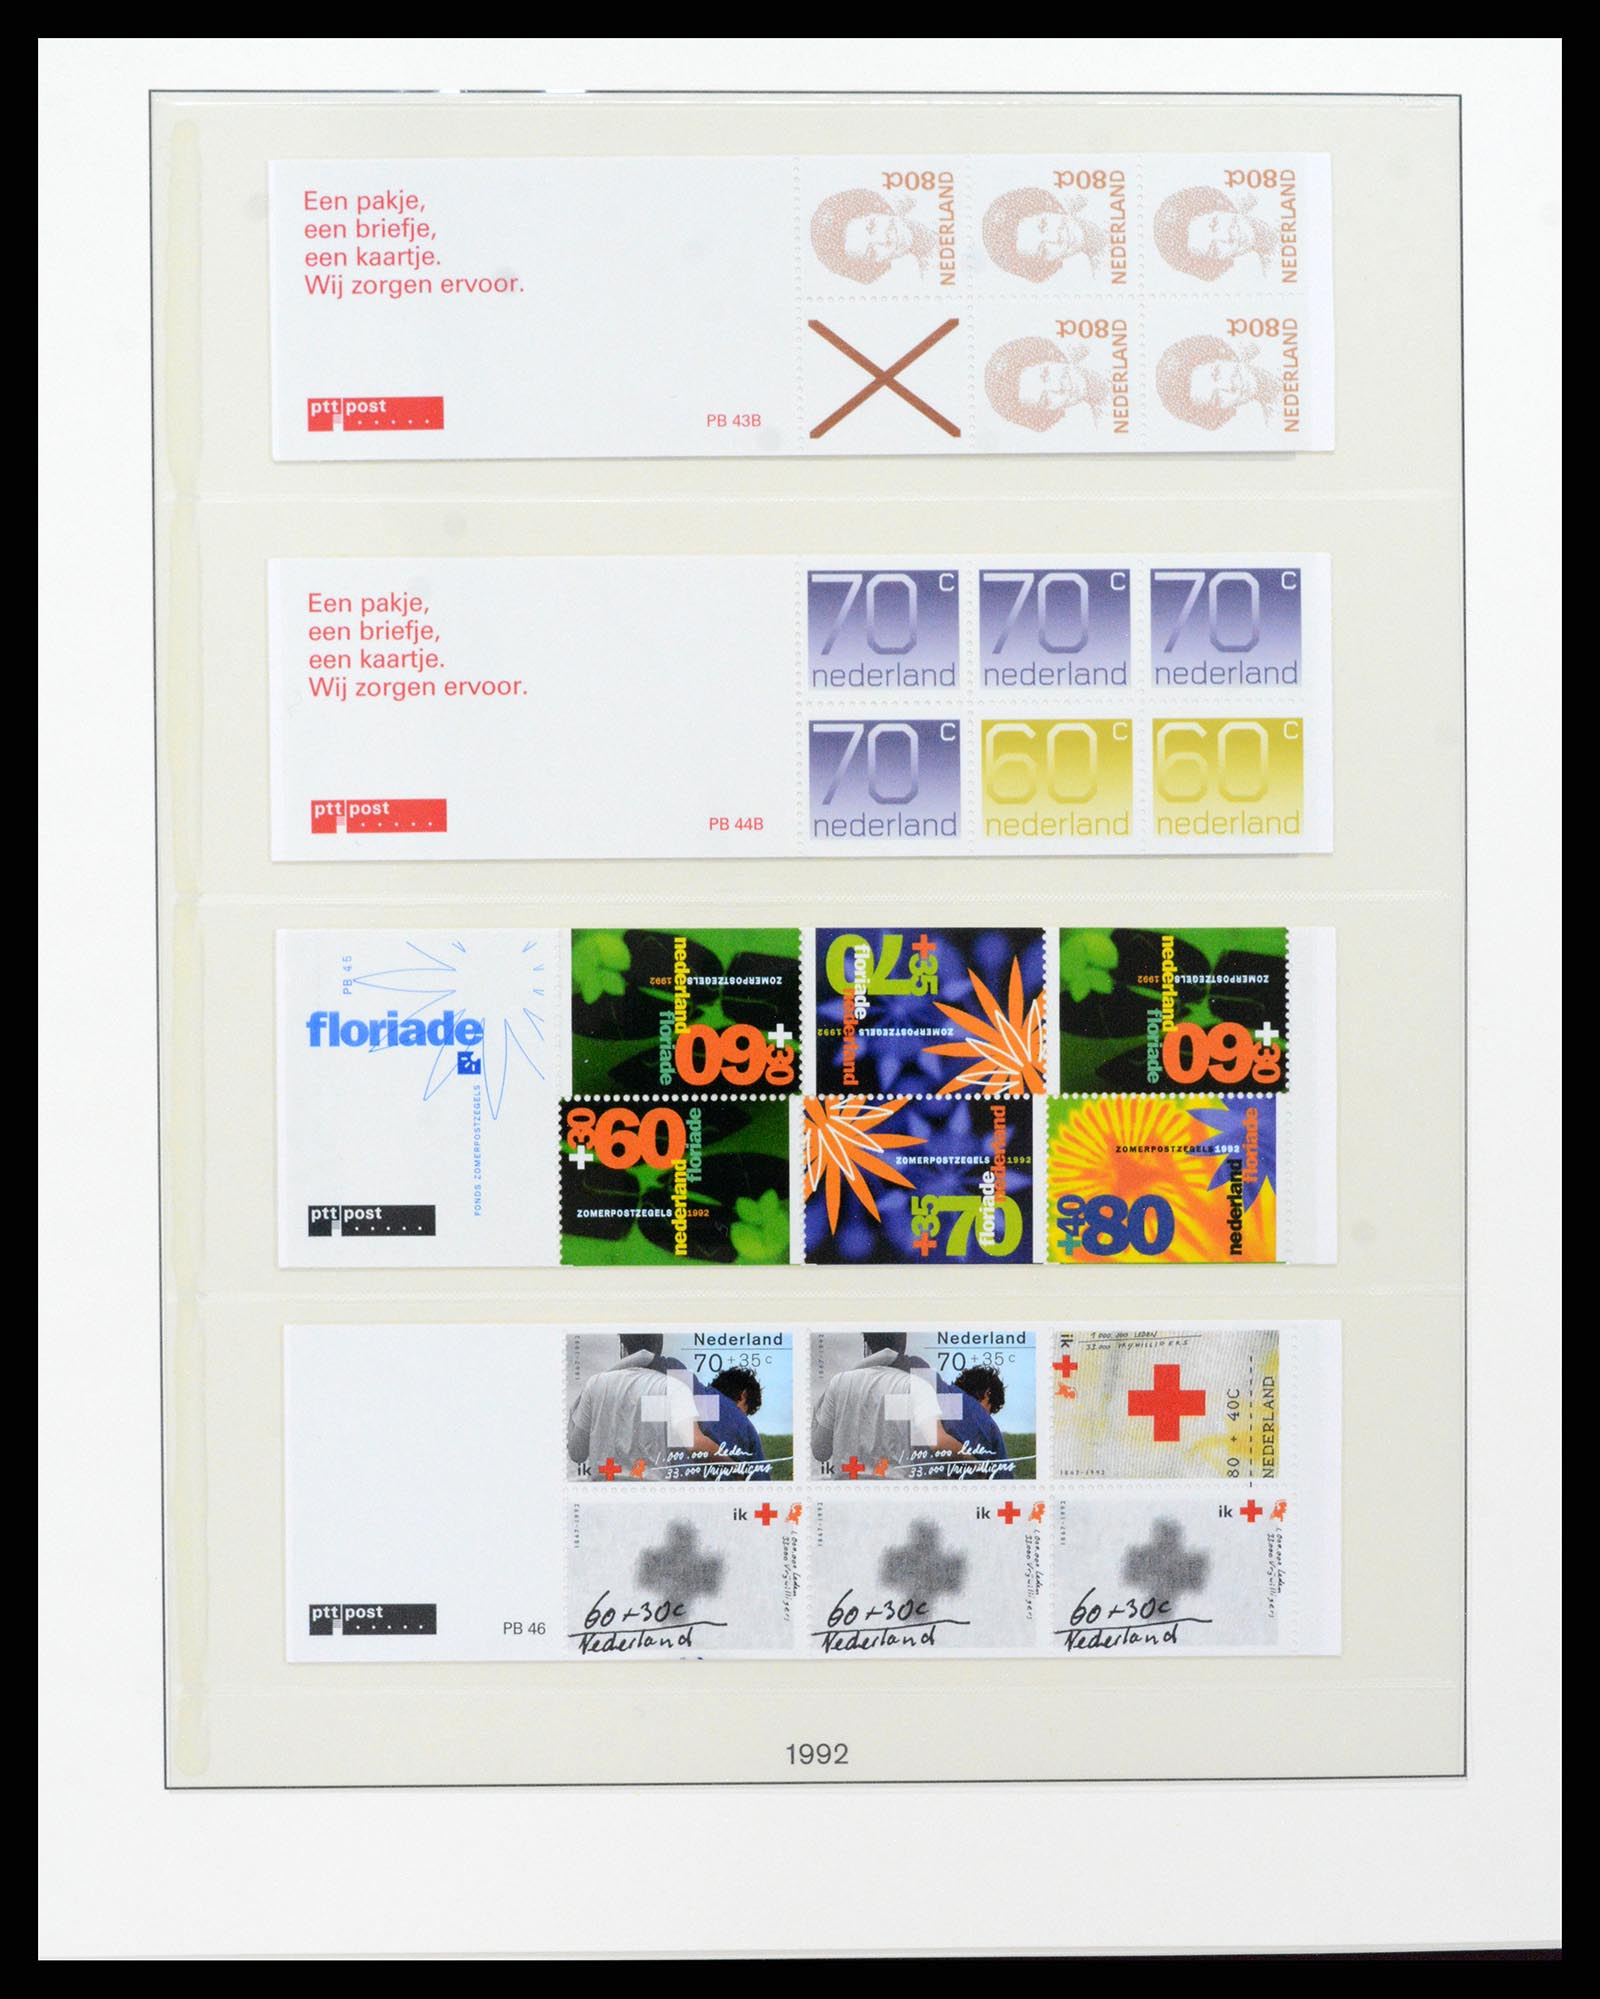 37994 026 - Stamp Collection 37994 Netherlands stampbooklets 1964-2002.